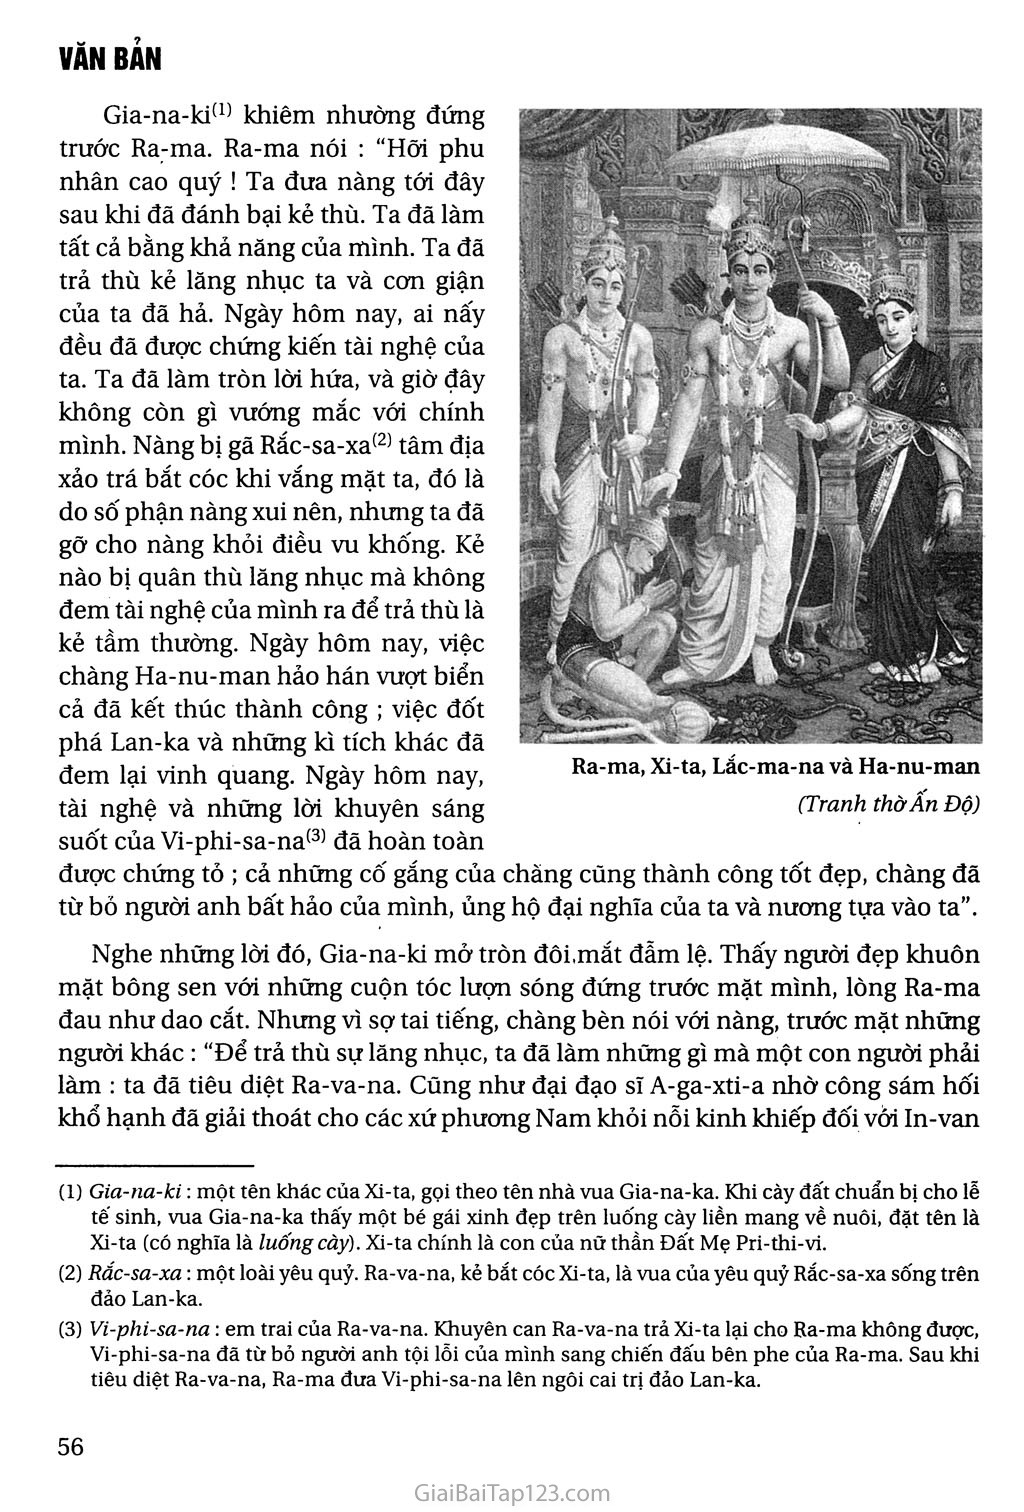 Ra - ma buộc tội (tích Ra - ma - ya - na - sử thi Ấn Độ) trang 2